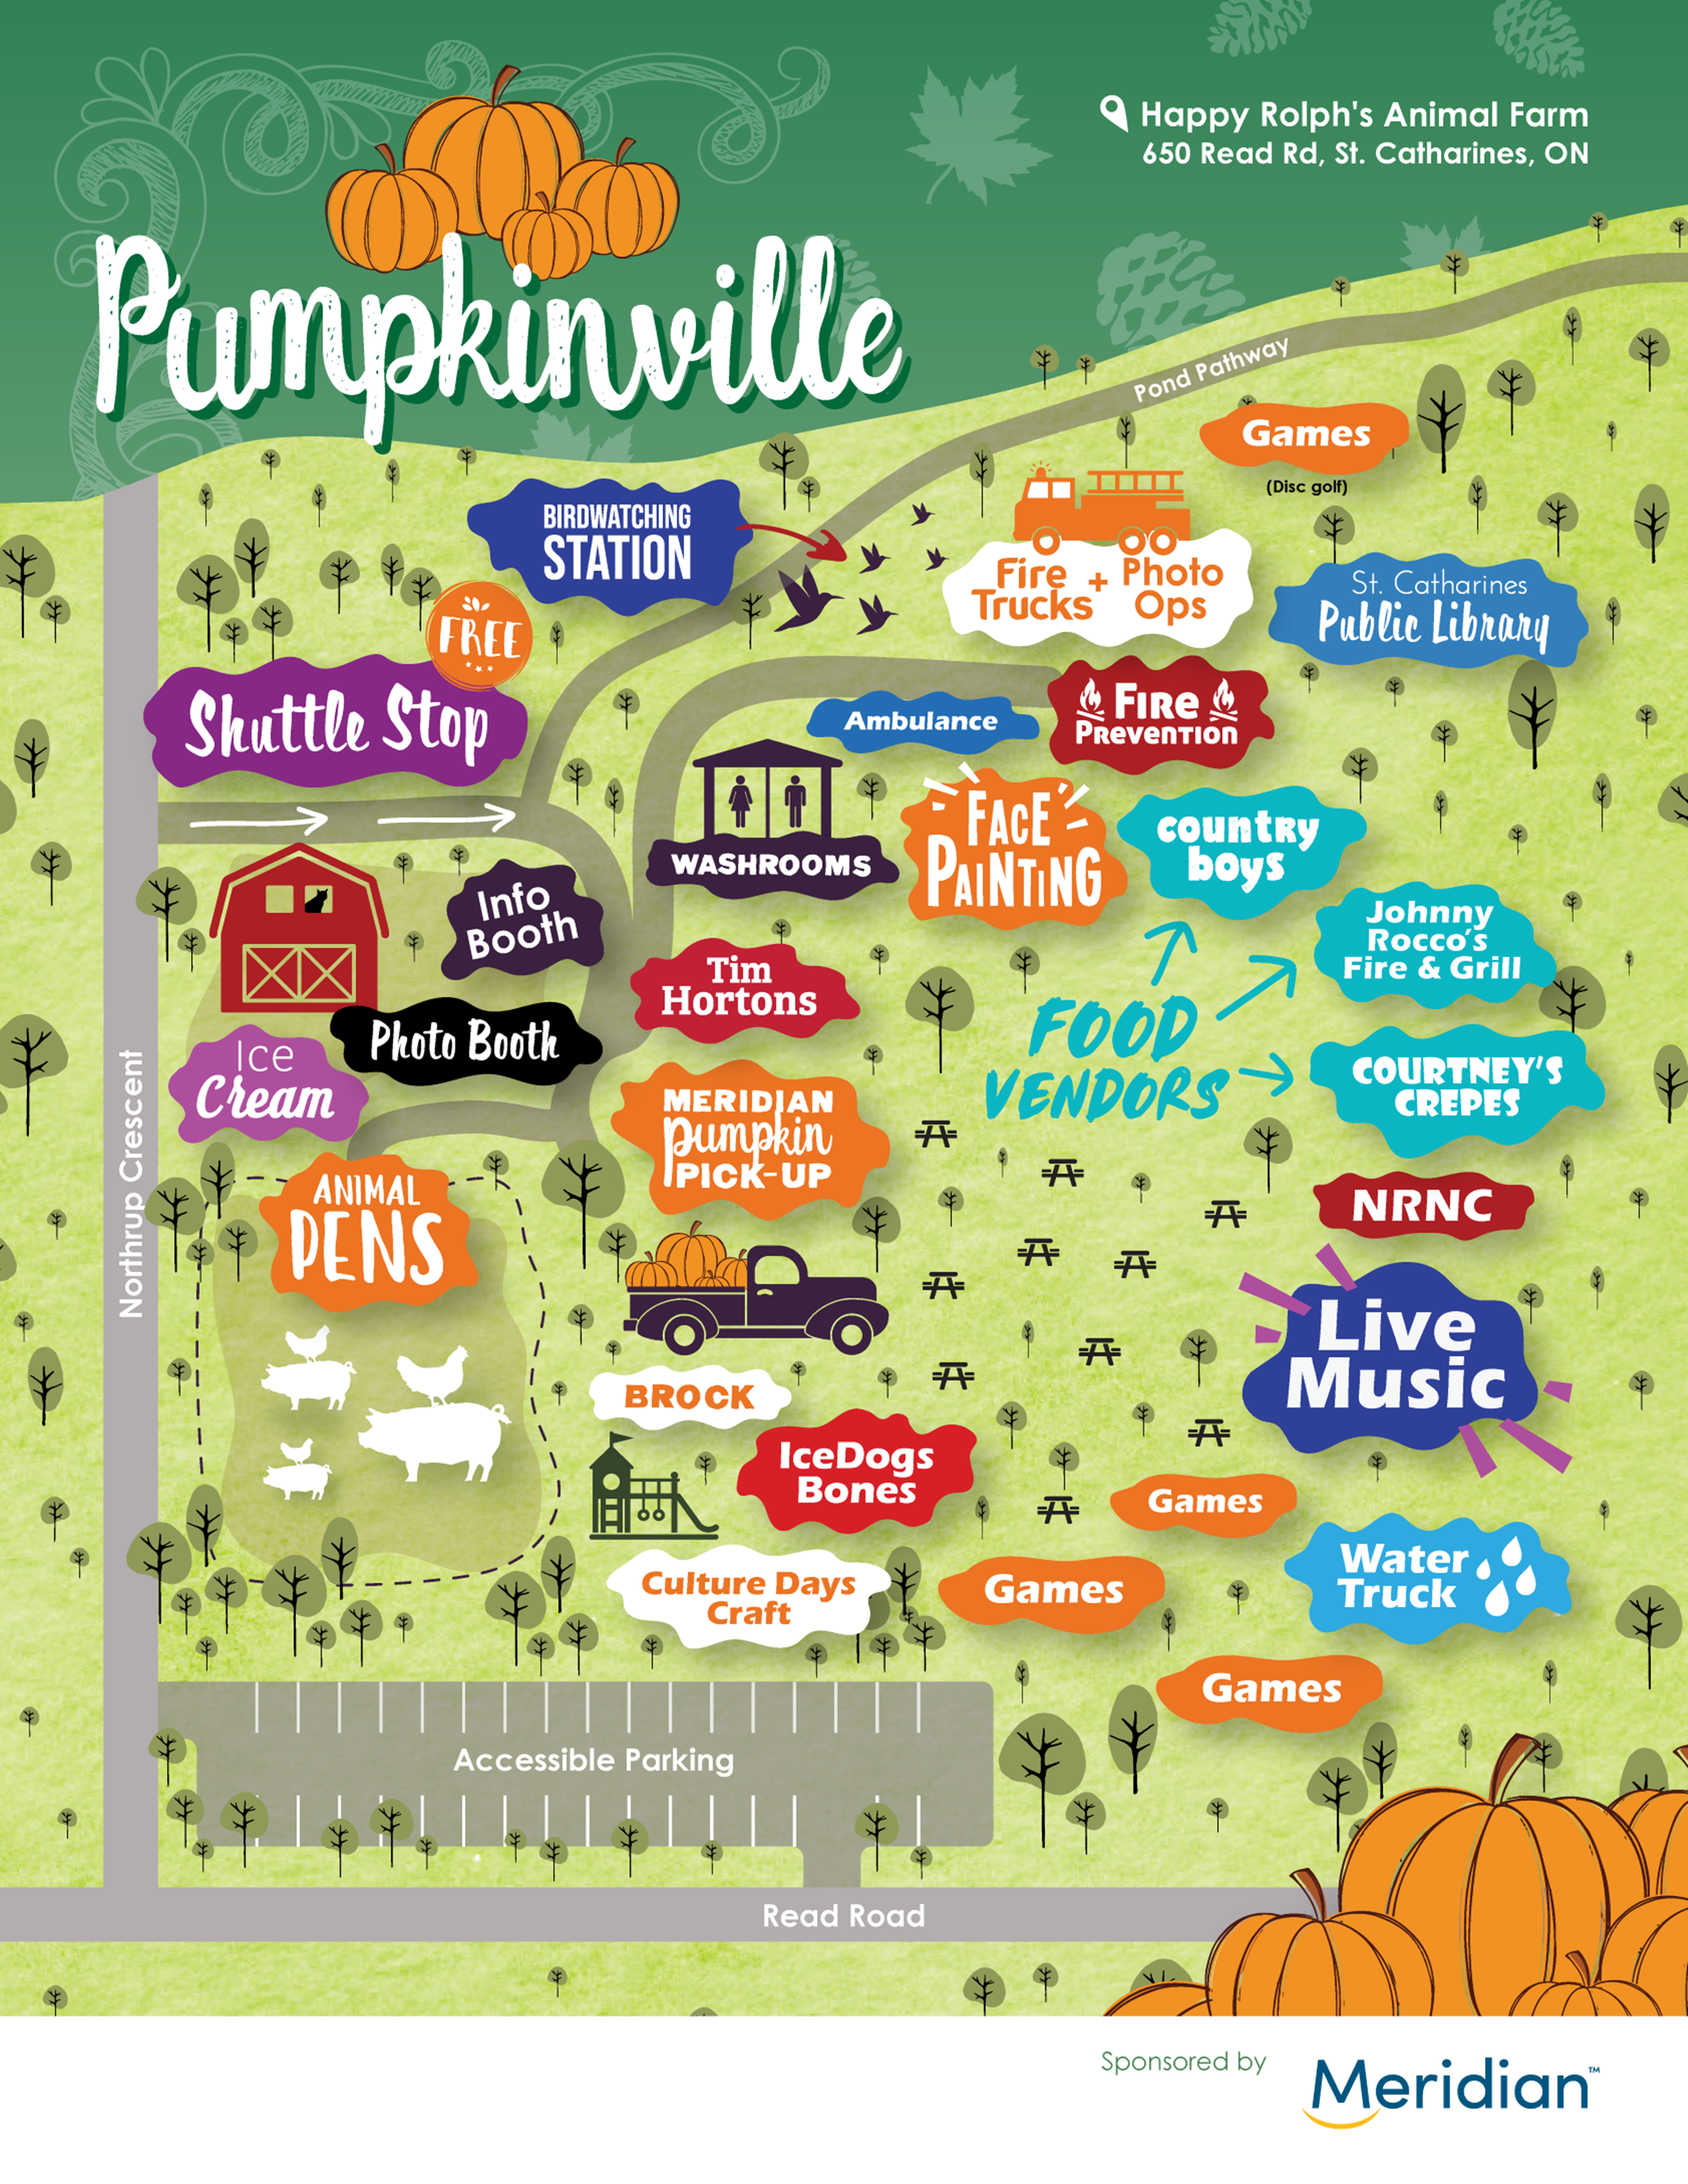 A map of pumpkinville festivities